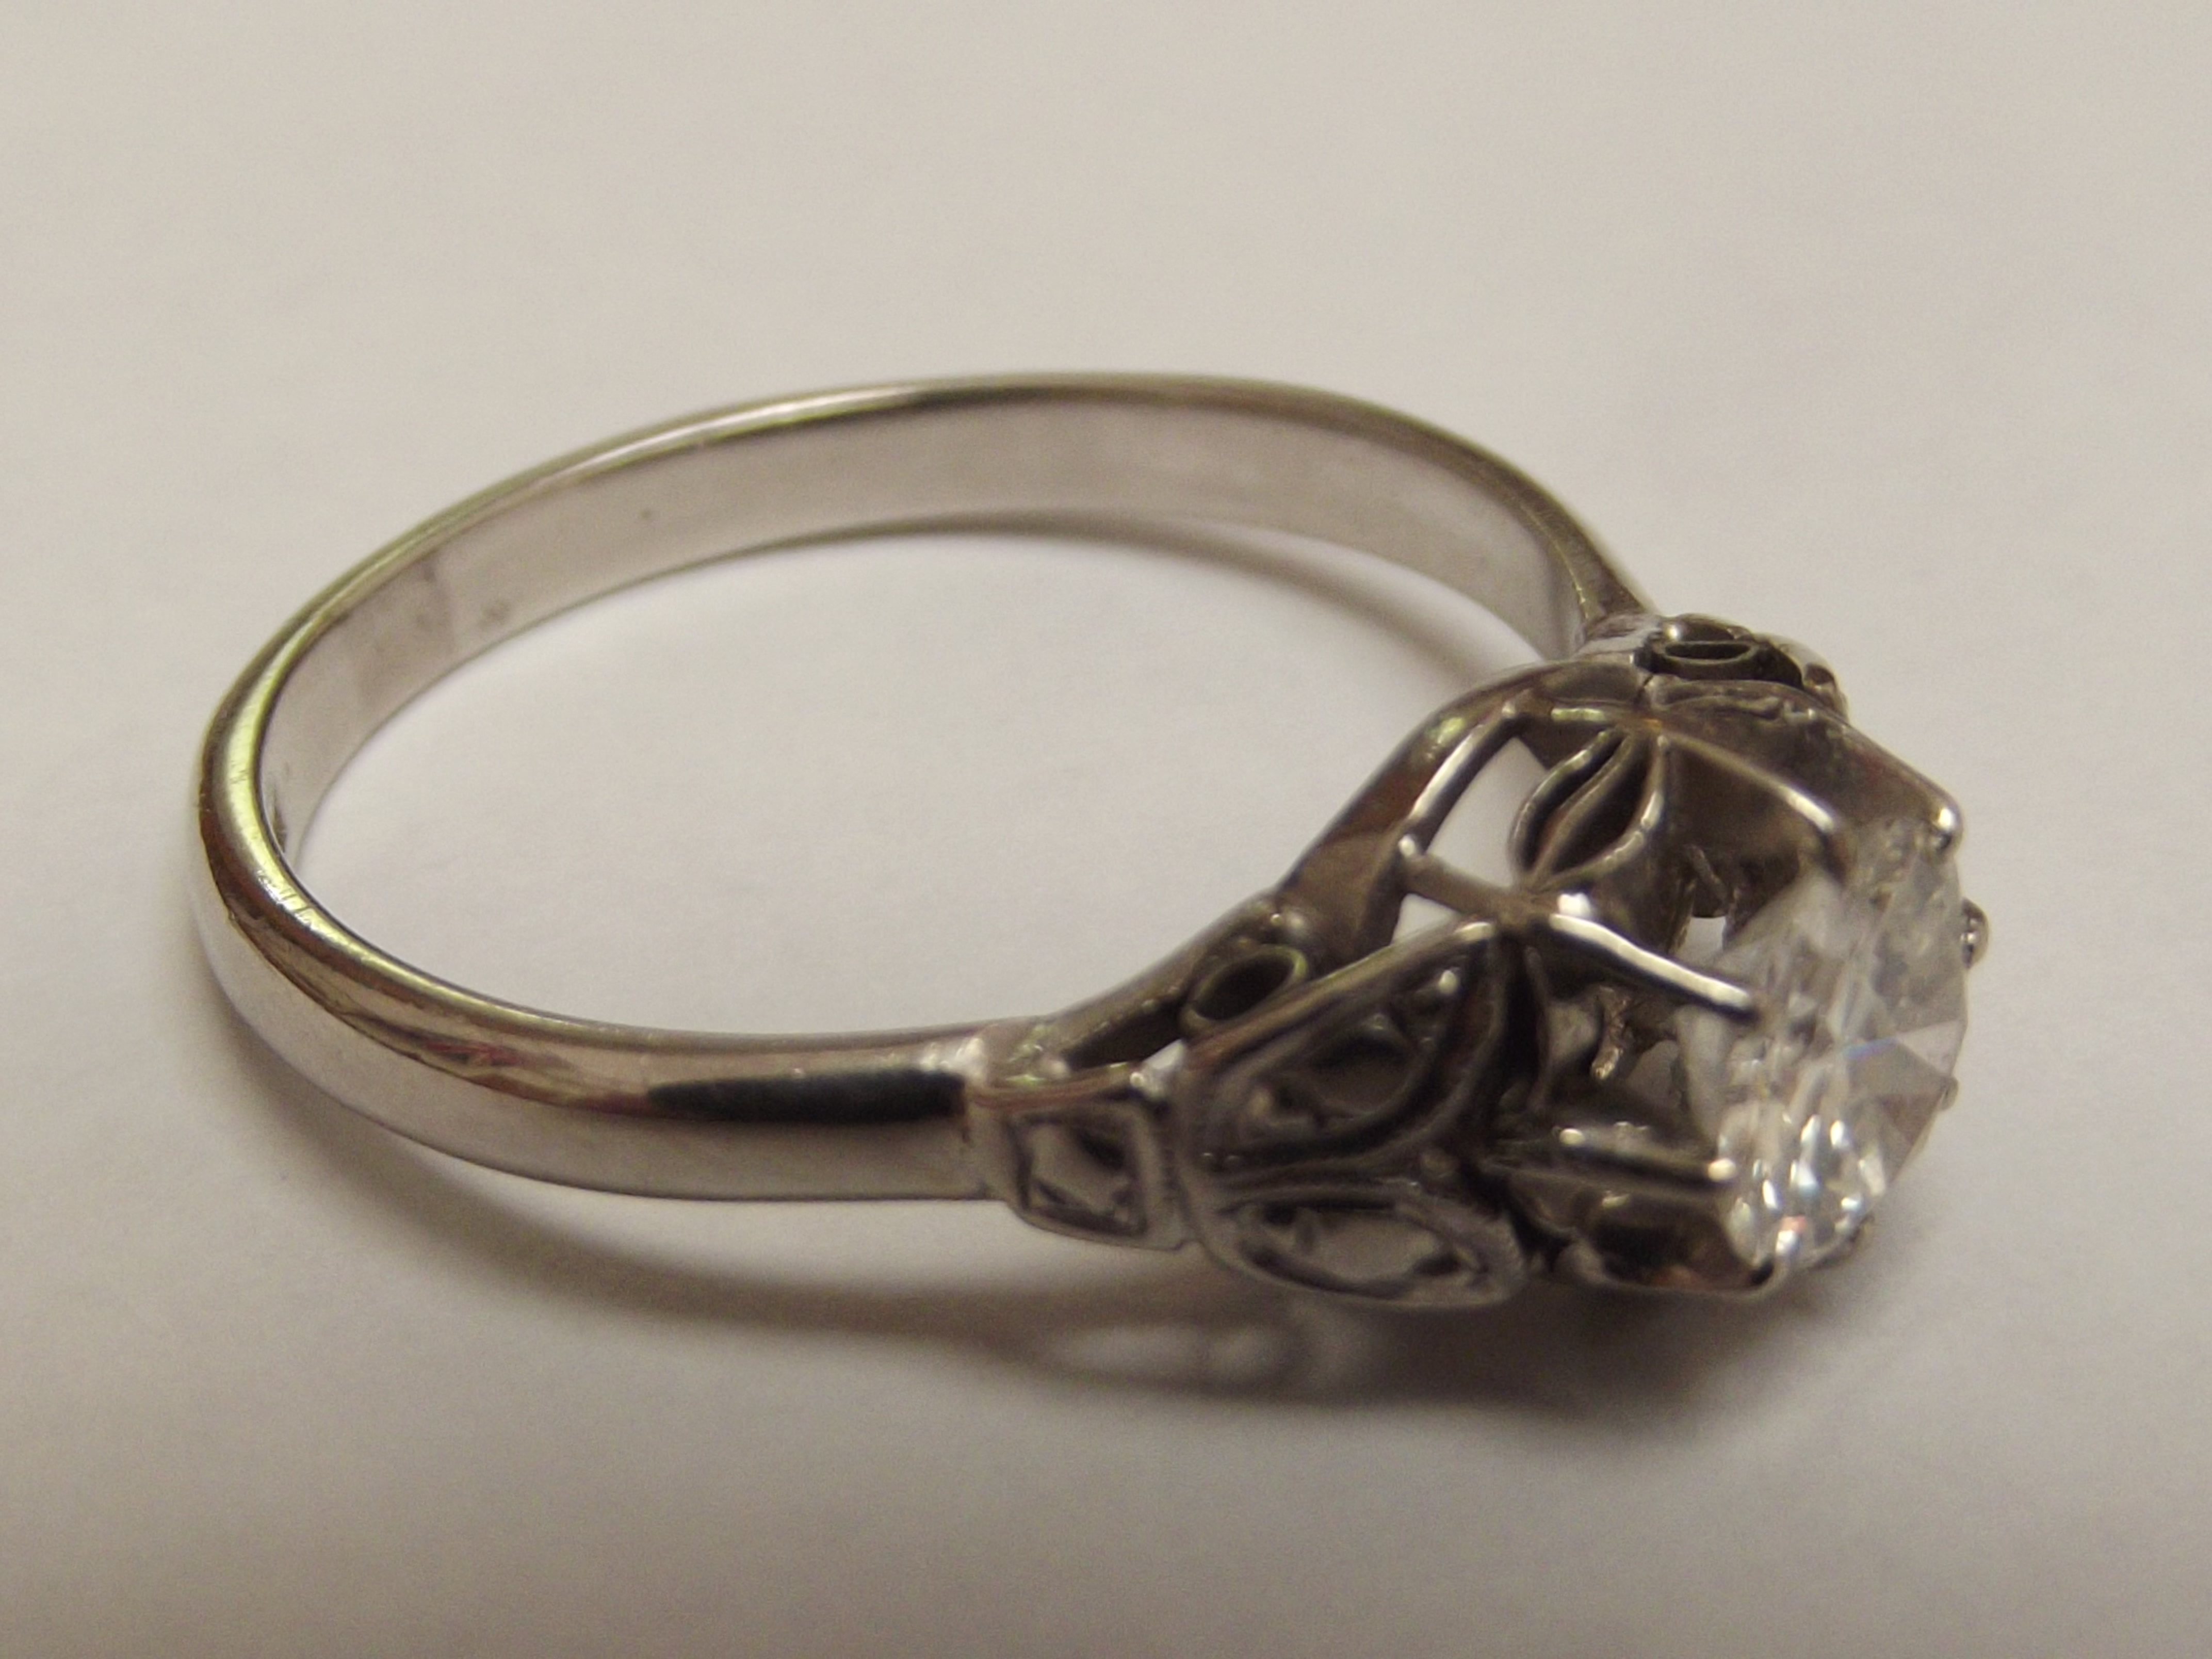 Diamond solitaire platinum ring, round brilliant c - Image 2 of 3